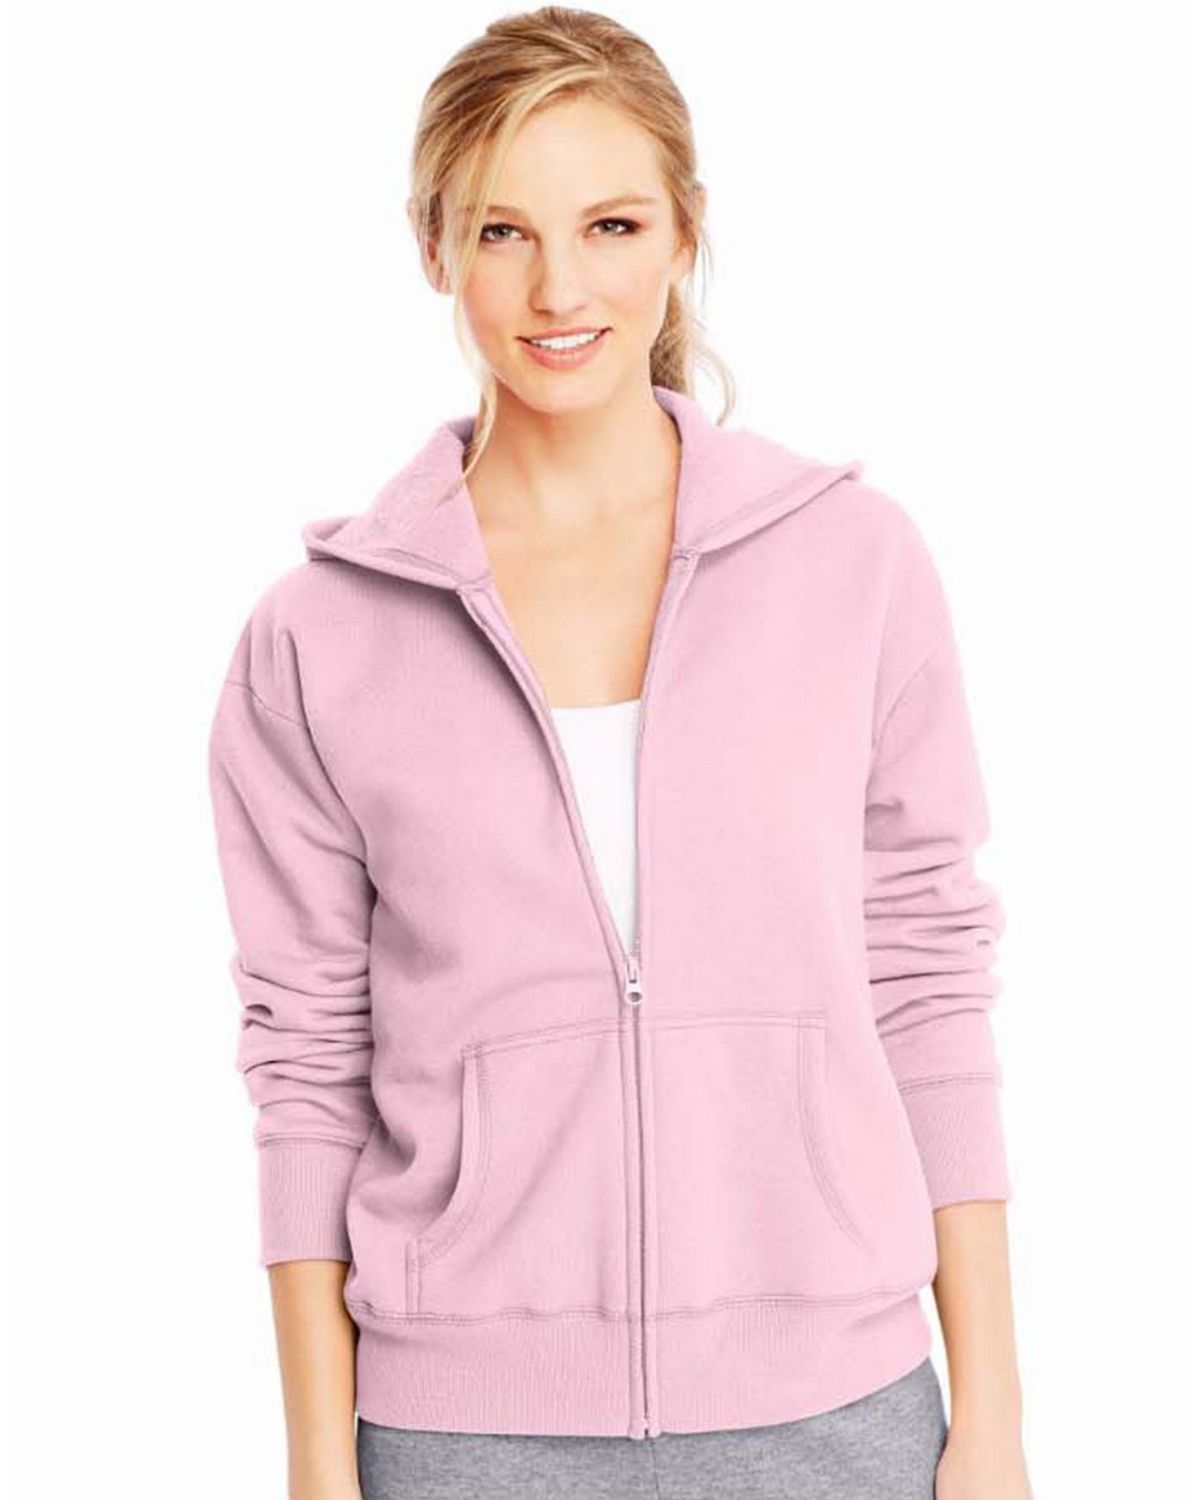 Hanes O4637 Comfortsoft Ecosmart Womens Full-Zip Hoodie Sweatshirt